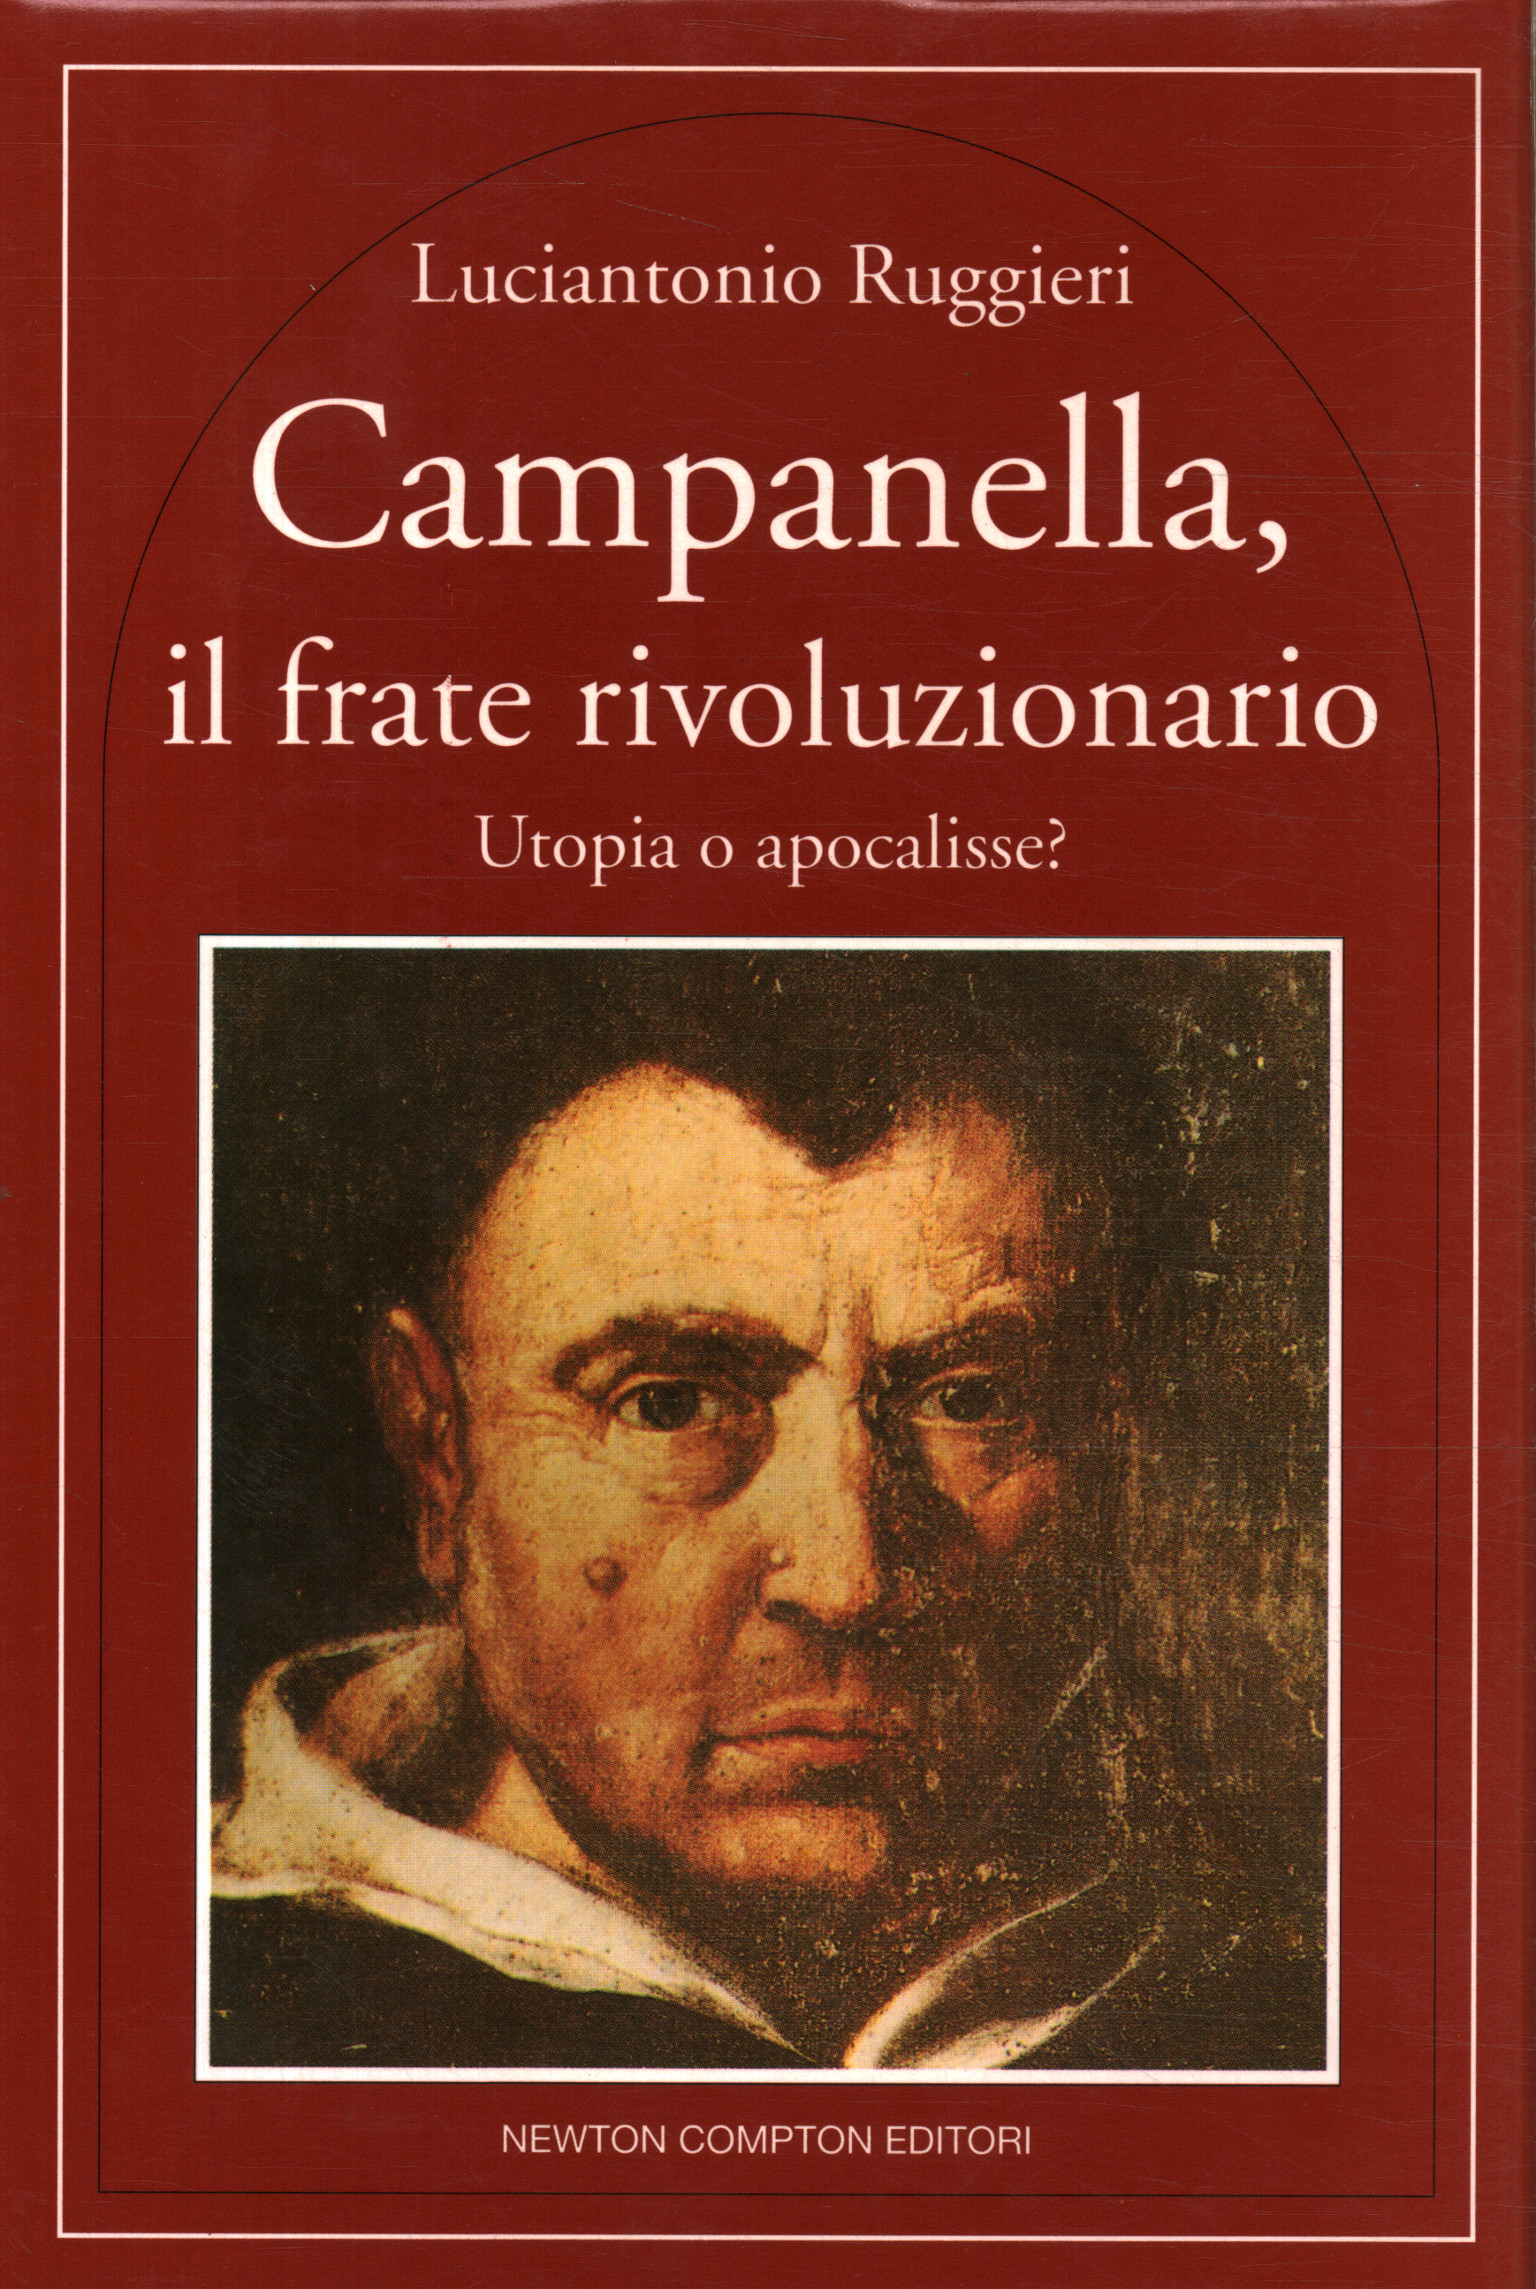 Campanella the revolutionary friar